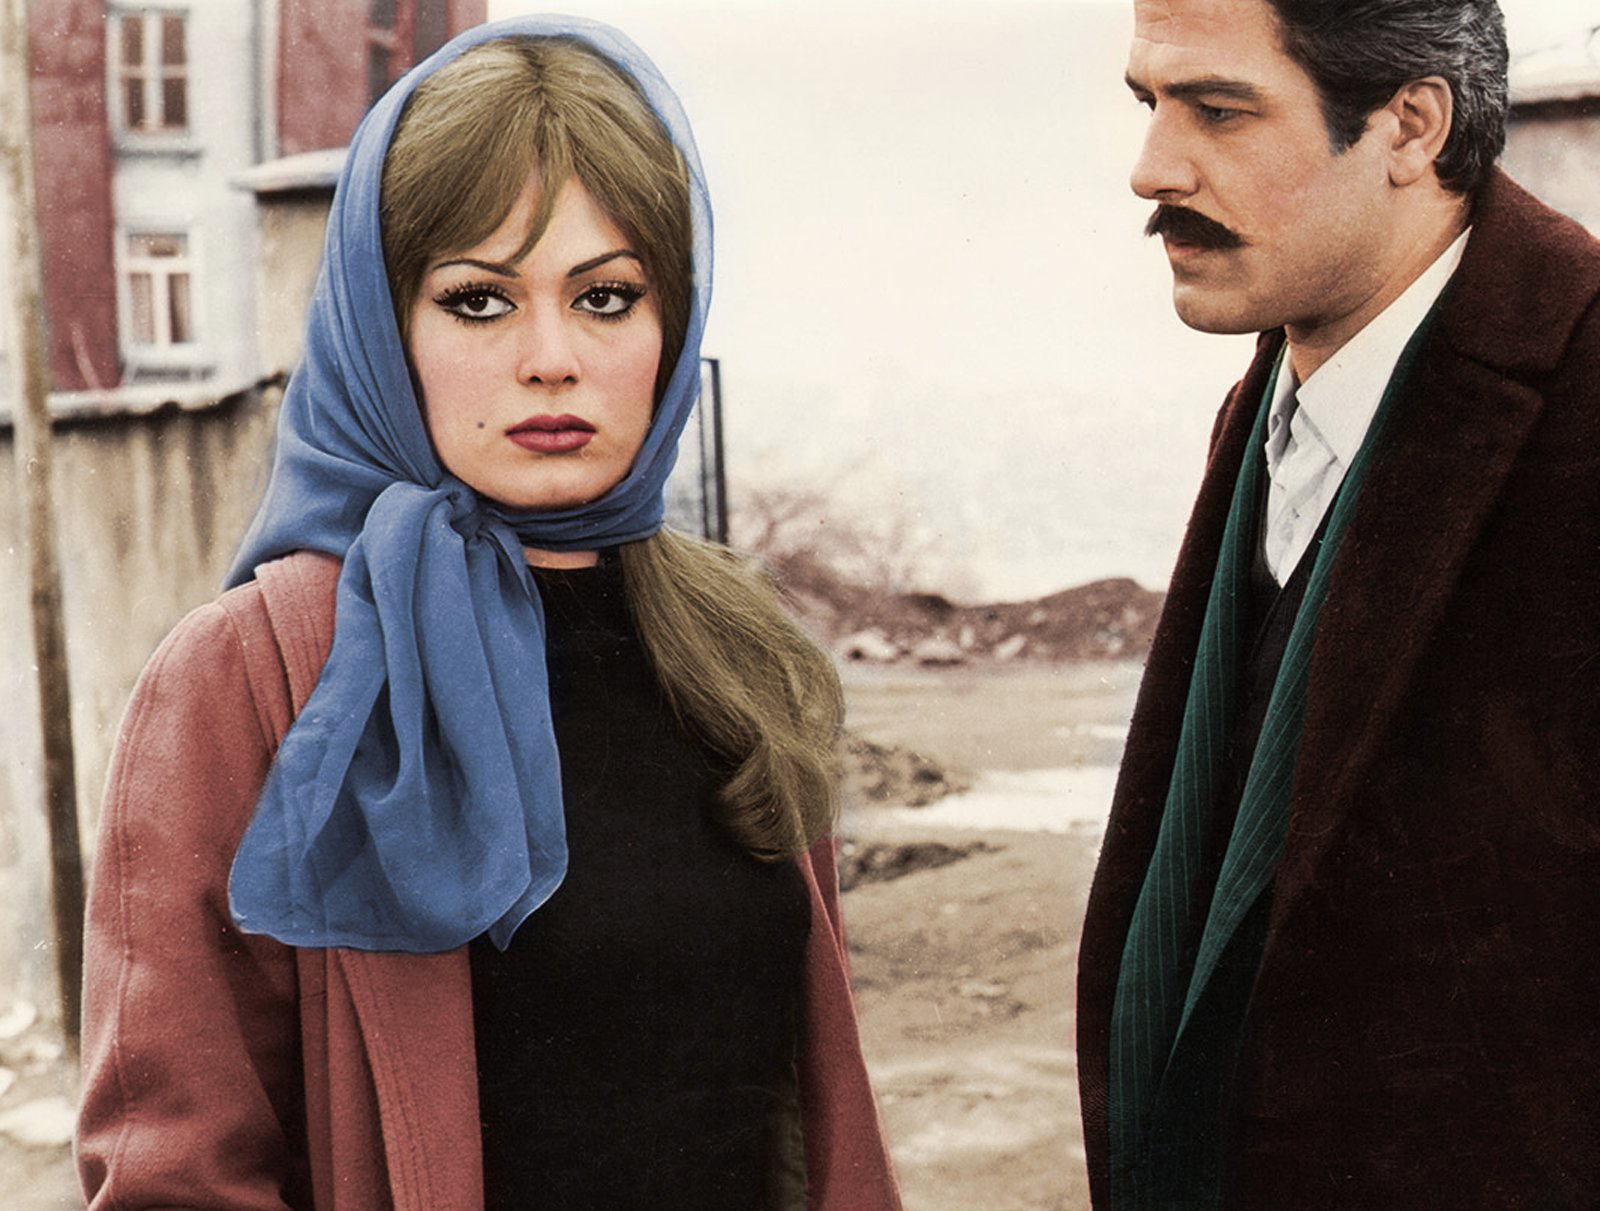 My Prostitute Love (1968) Screenshot 1 